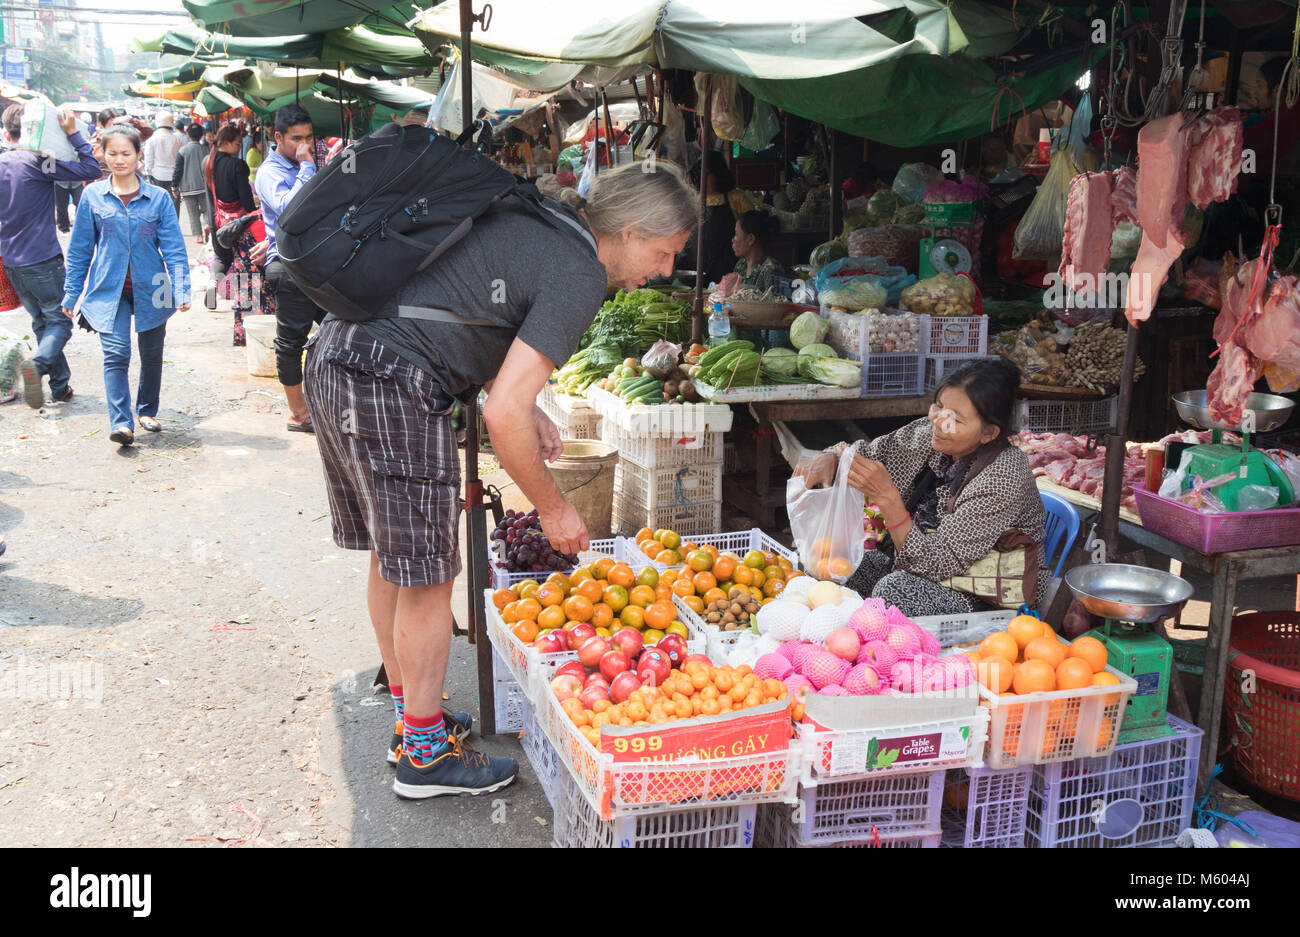 Kambodscha Tourismus - eine touristische Kauf von Lebensmitteln an einem Obststand, Phnom Penh, Phnom Penh, Kambodscha Asien Stockfoto